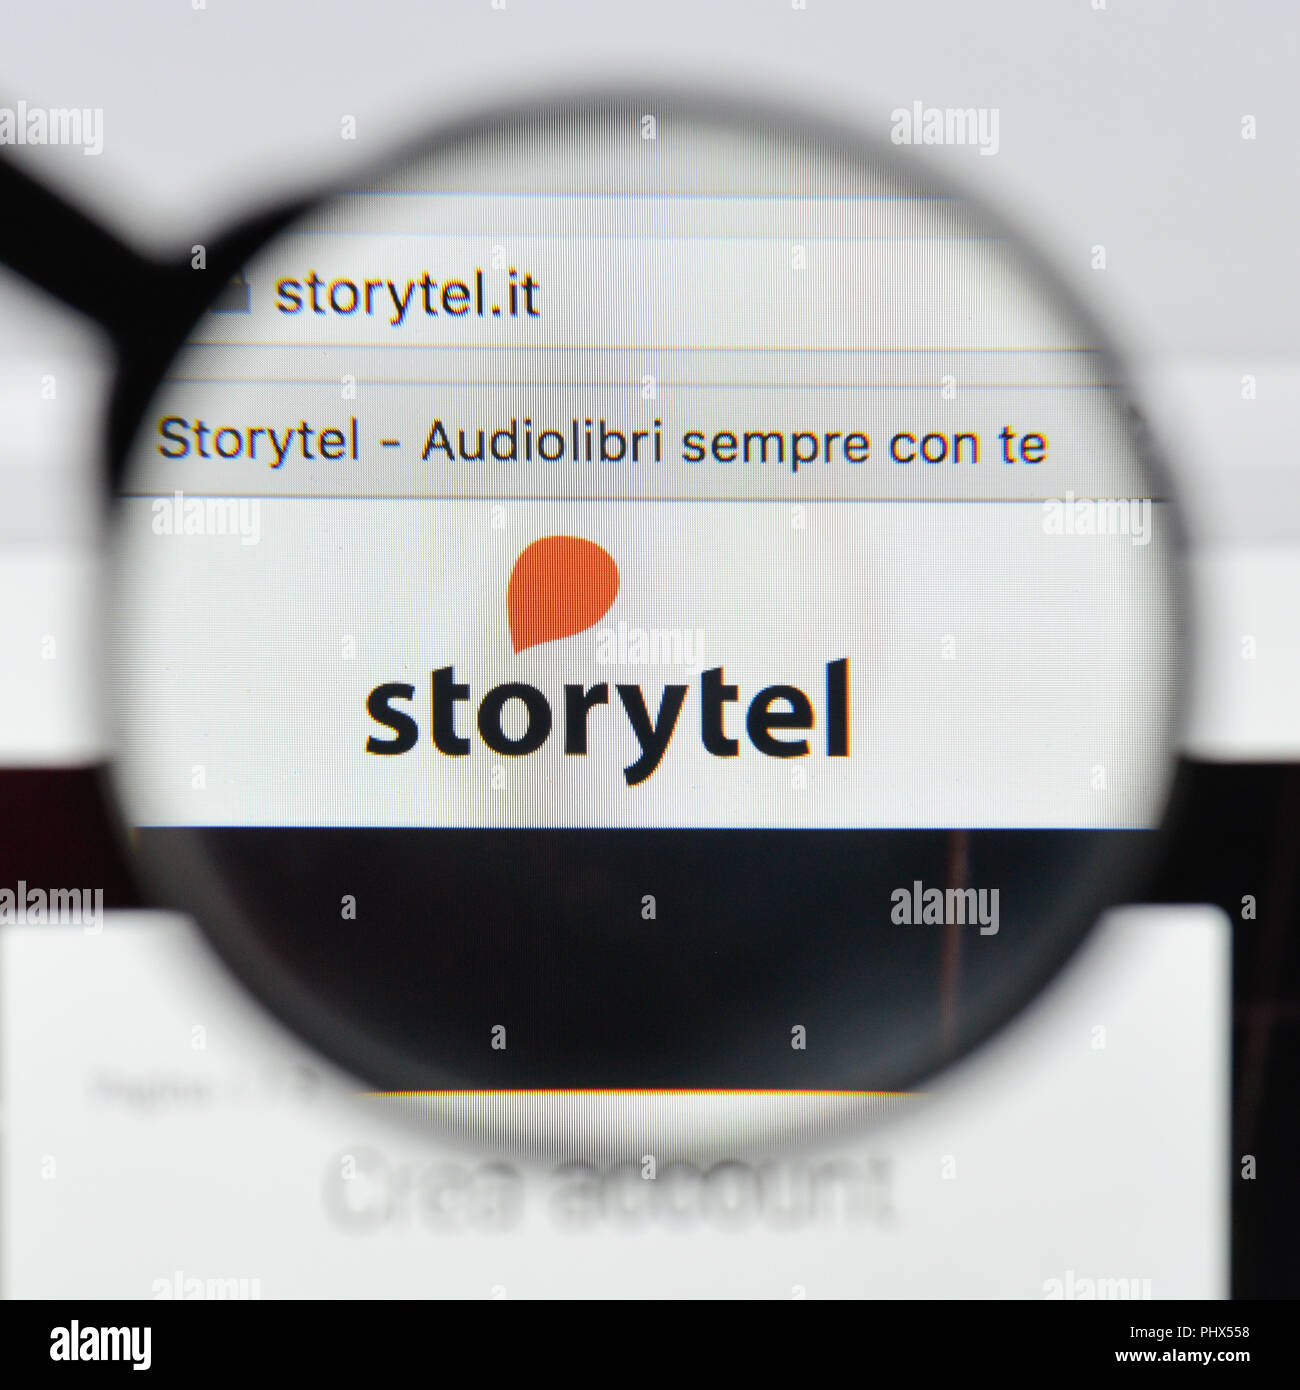 Storytel immagini e fotografie stock ad alta risoluzione - Alamy